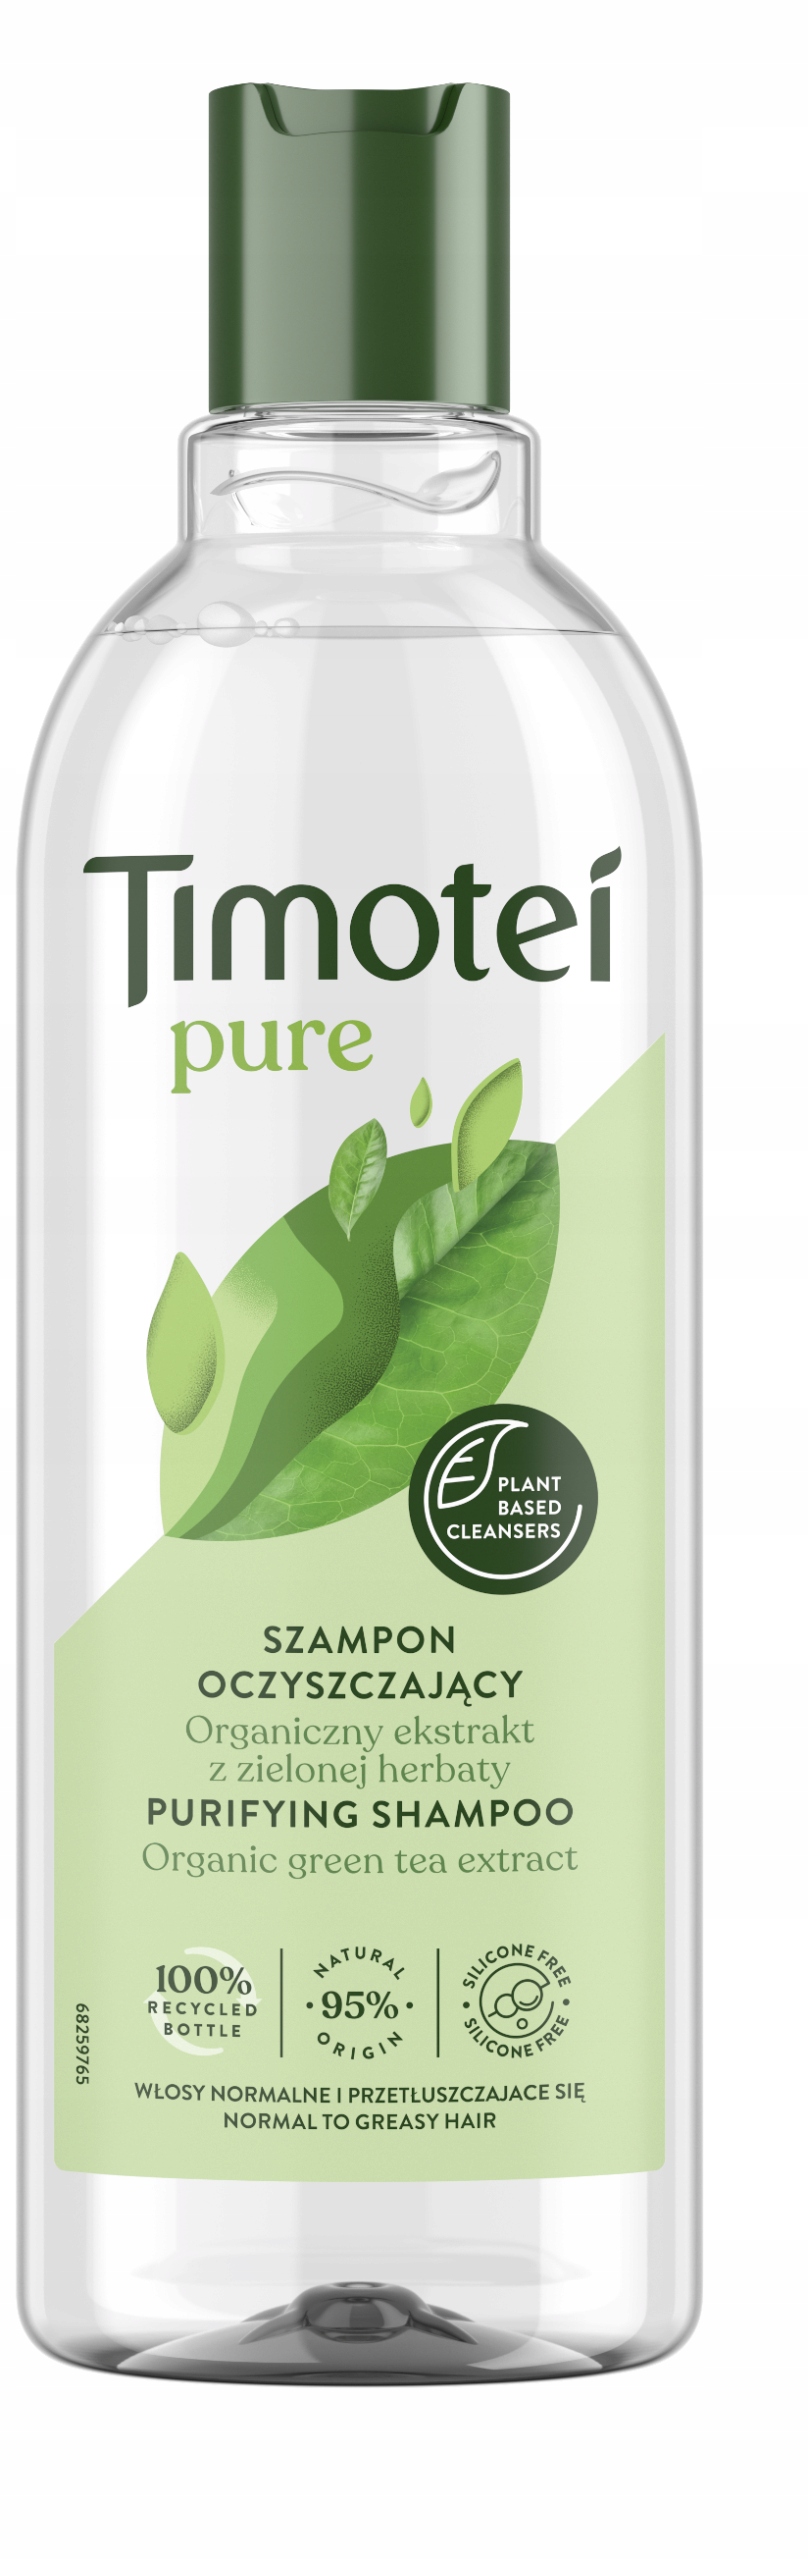 timotei szampon wzmacniający